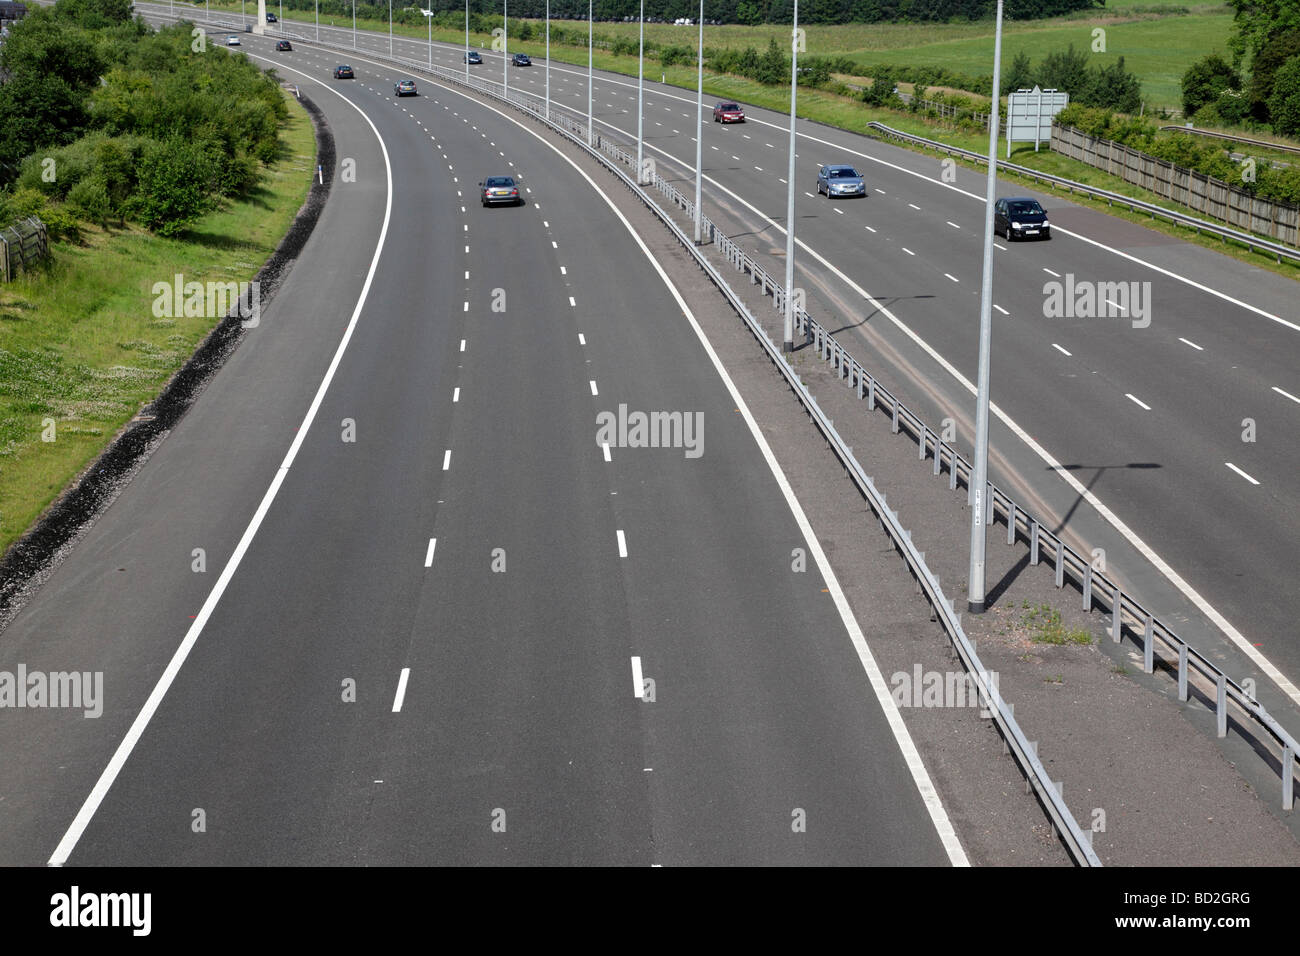 Voies d'autoroute à péage m6 juste après T7 cannock staffordshire uk Banque D'Images